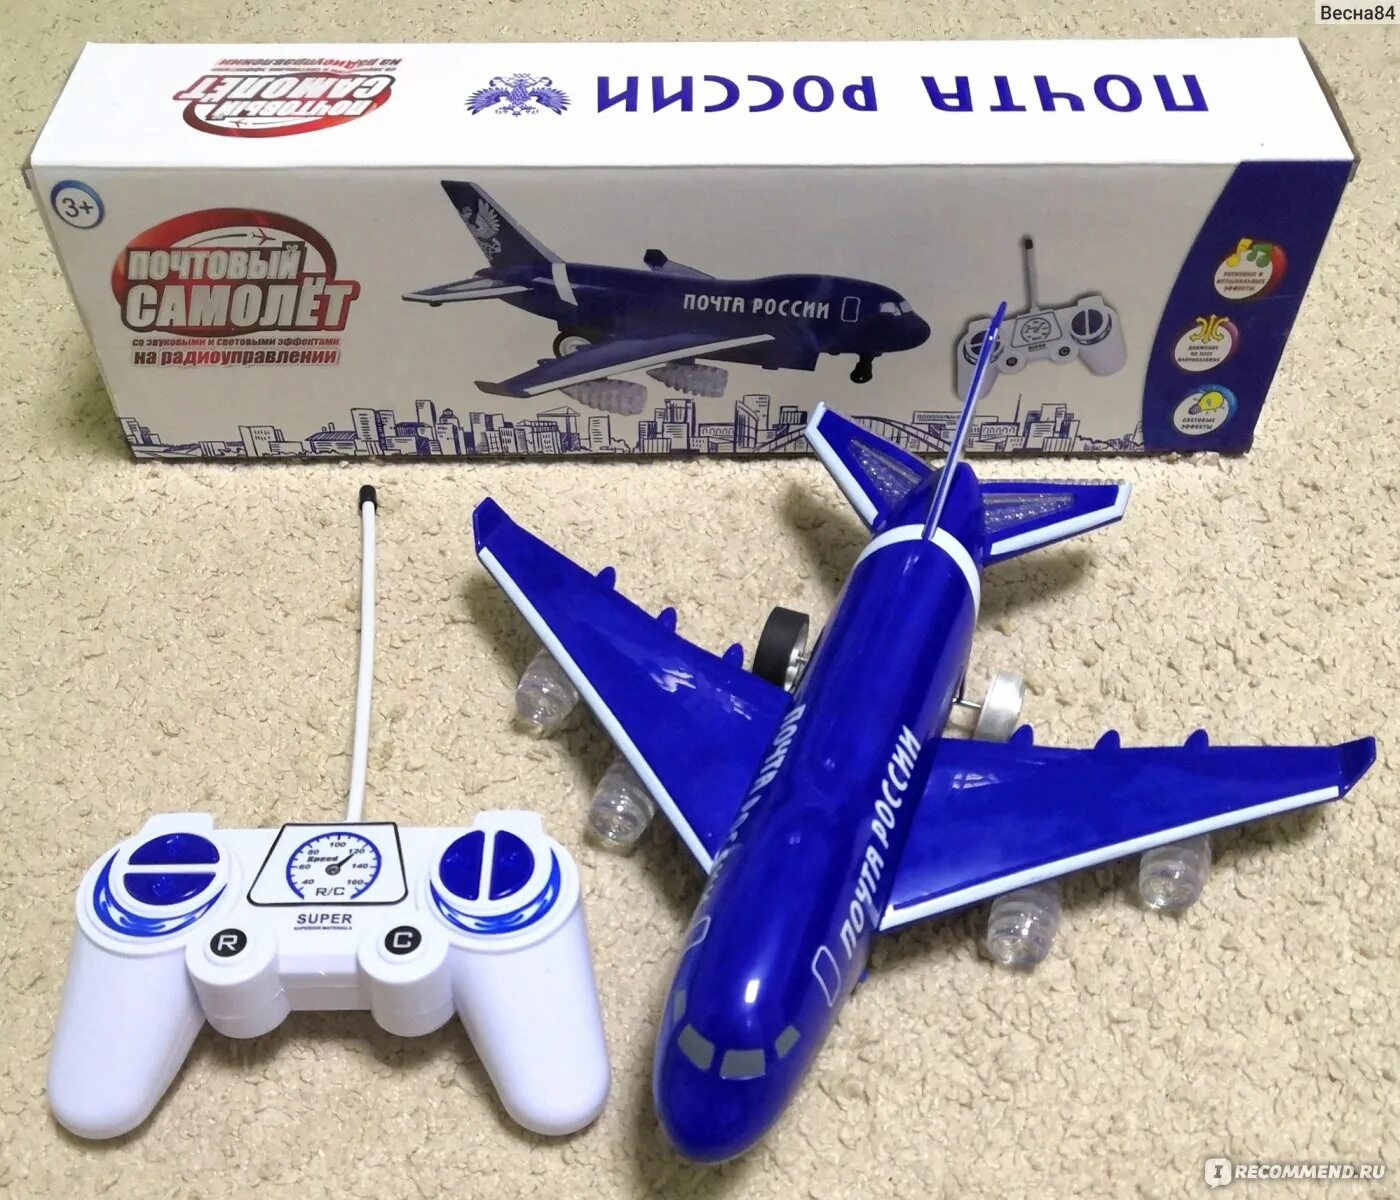 Как можно купить самолет. Радиоуправляемый самолет Shenzhen Toys wx8803 камуфляж - м32298. Радиоуправляемый самолёт. Самолет на пульте управления. Почтовый самолет на радиоуправлении.